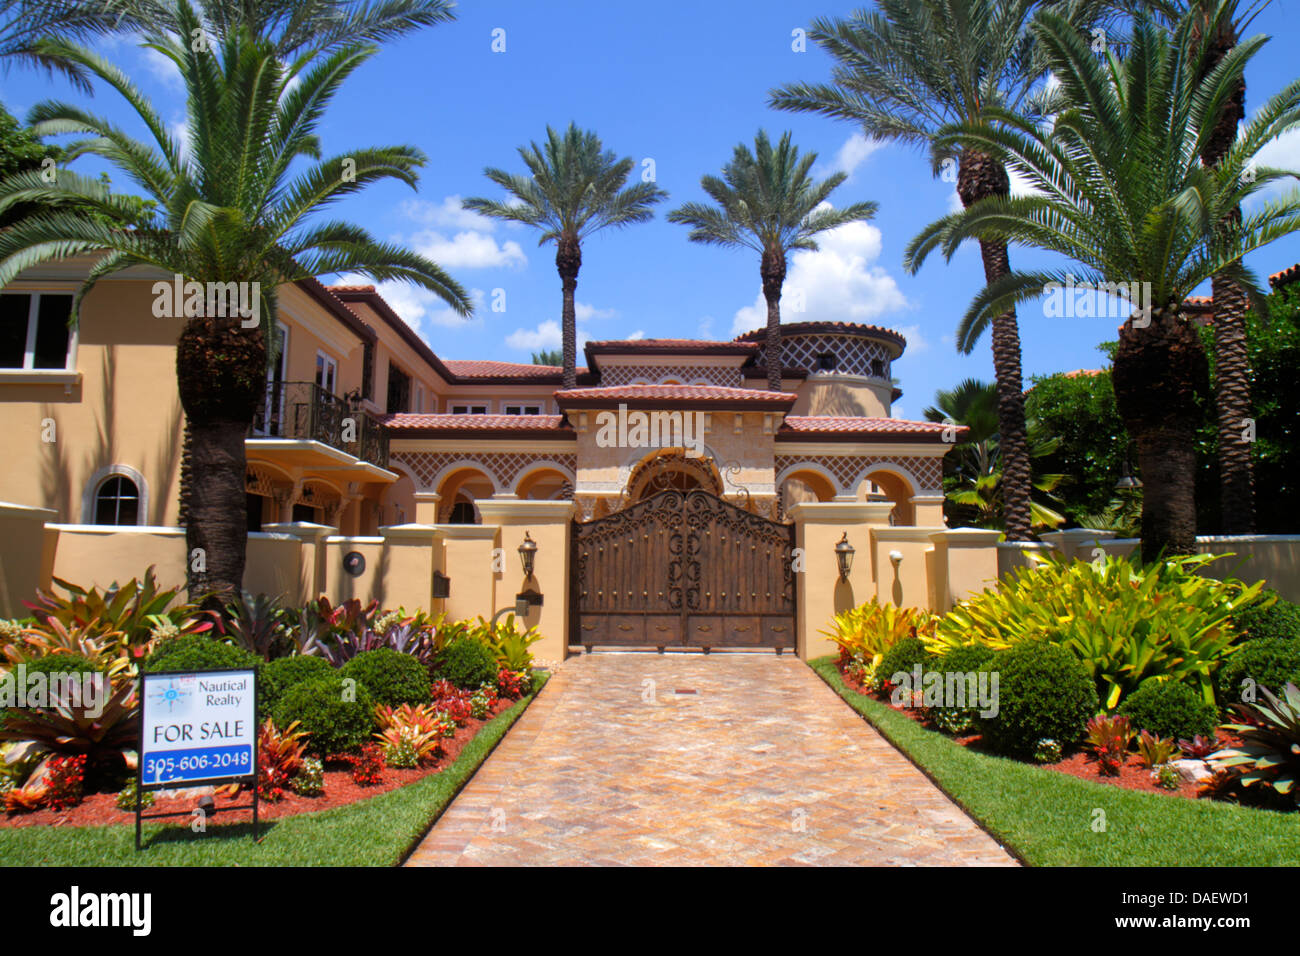 Miami Beach Florida,maison maisons maisons maisons résidence,maison,manoir,vente,panneau,porte,FL130601004 Banque D'Images